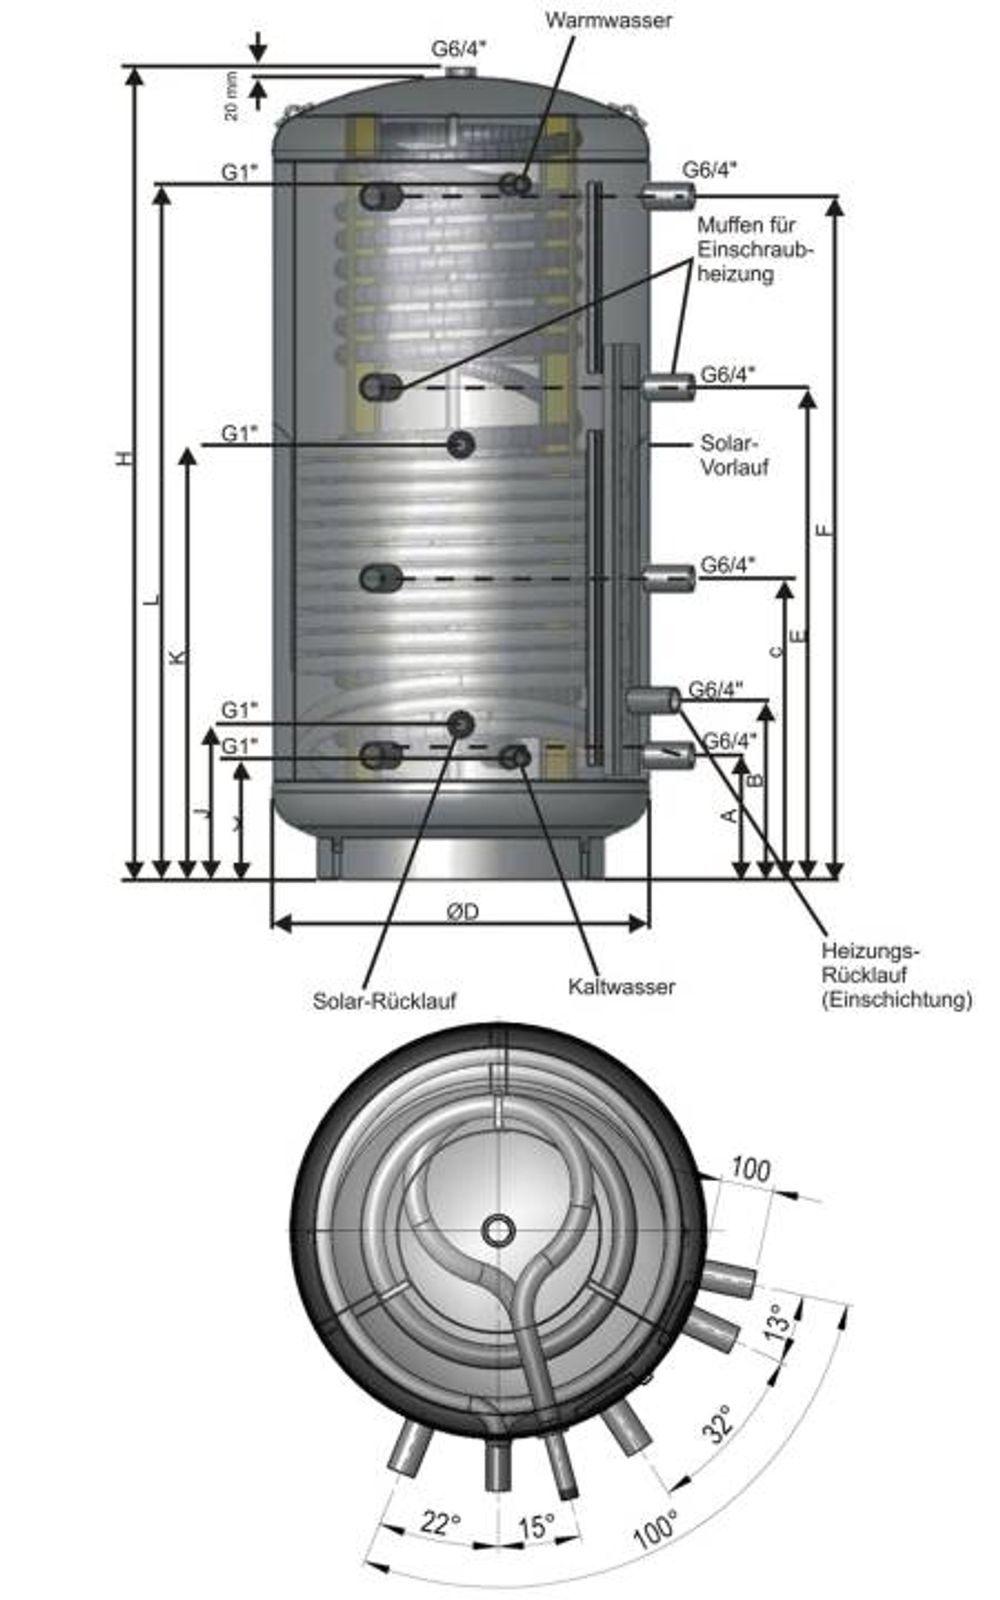 Kombi-Schichtspeicher 800 Liter mit einem Wärmetauscher und 100 mm Isolierung